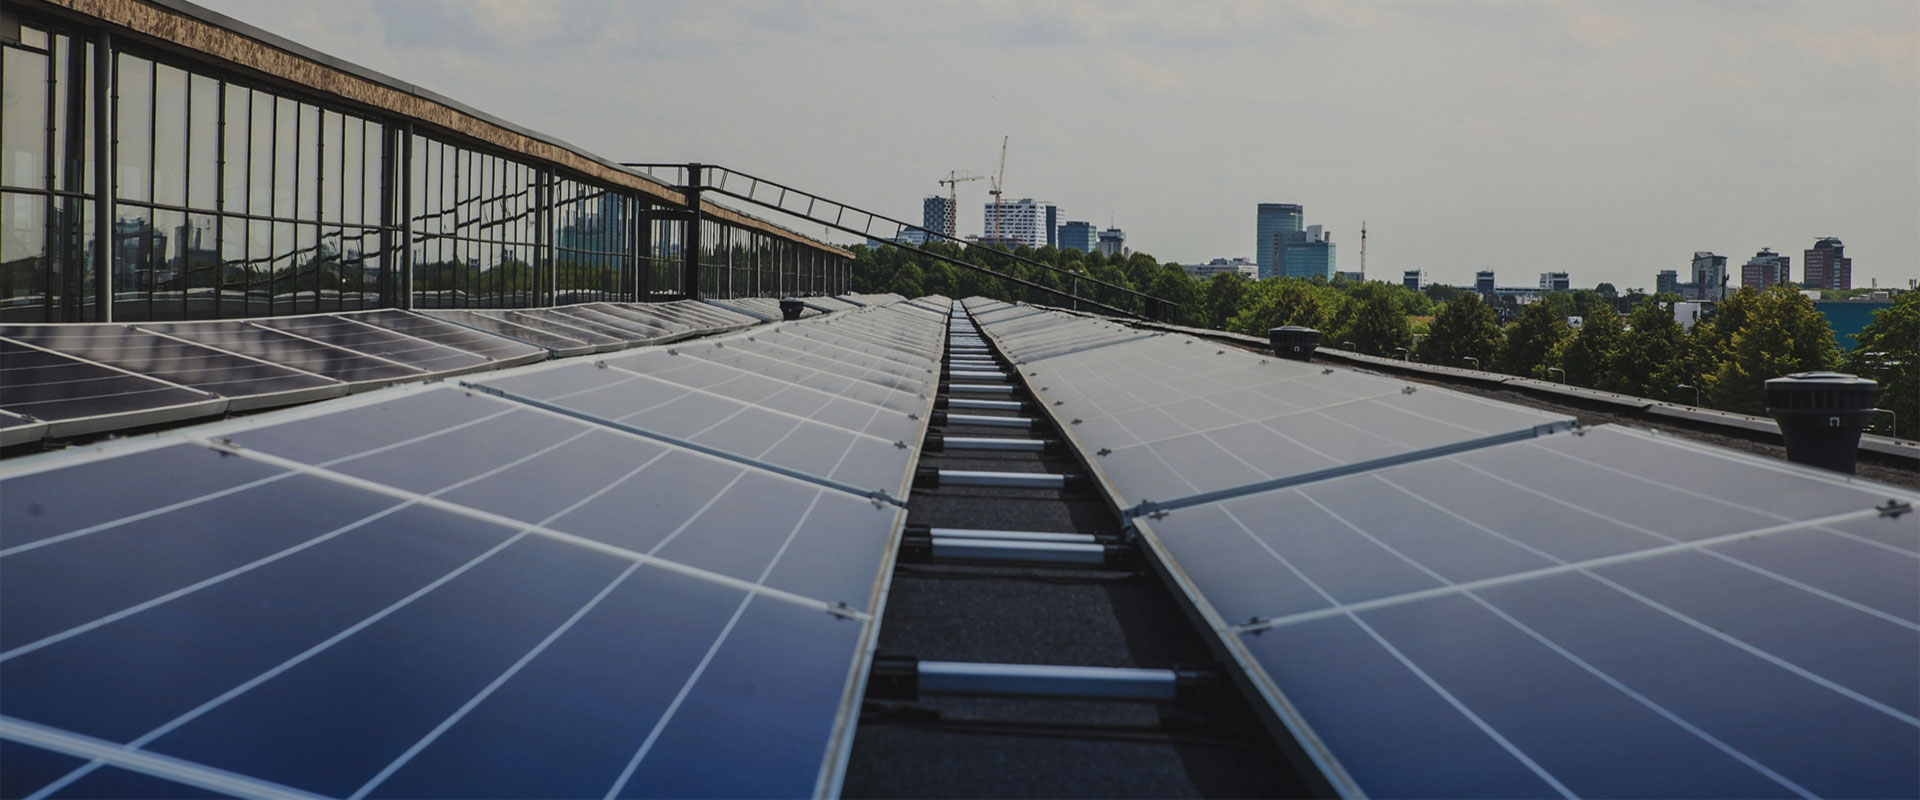 Solar-Rooftop-Generation-01.jpg